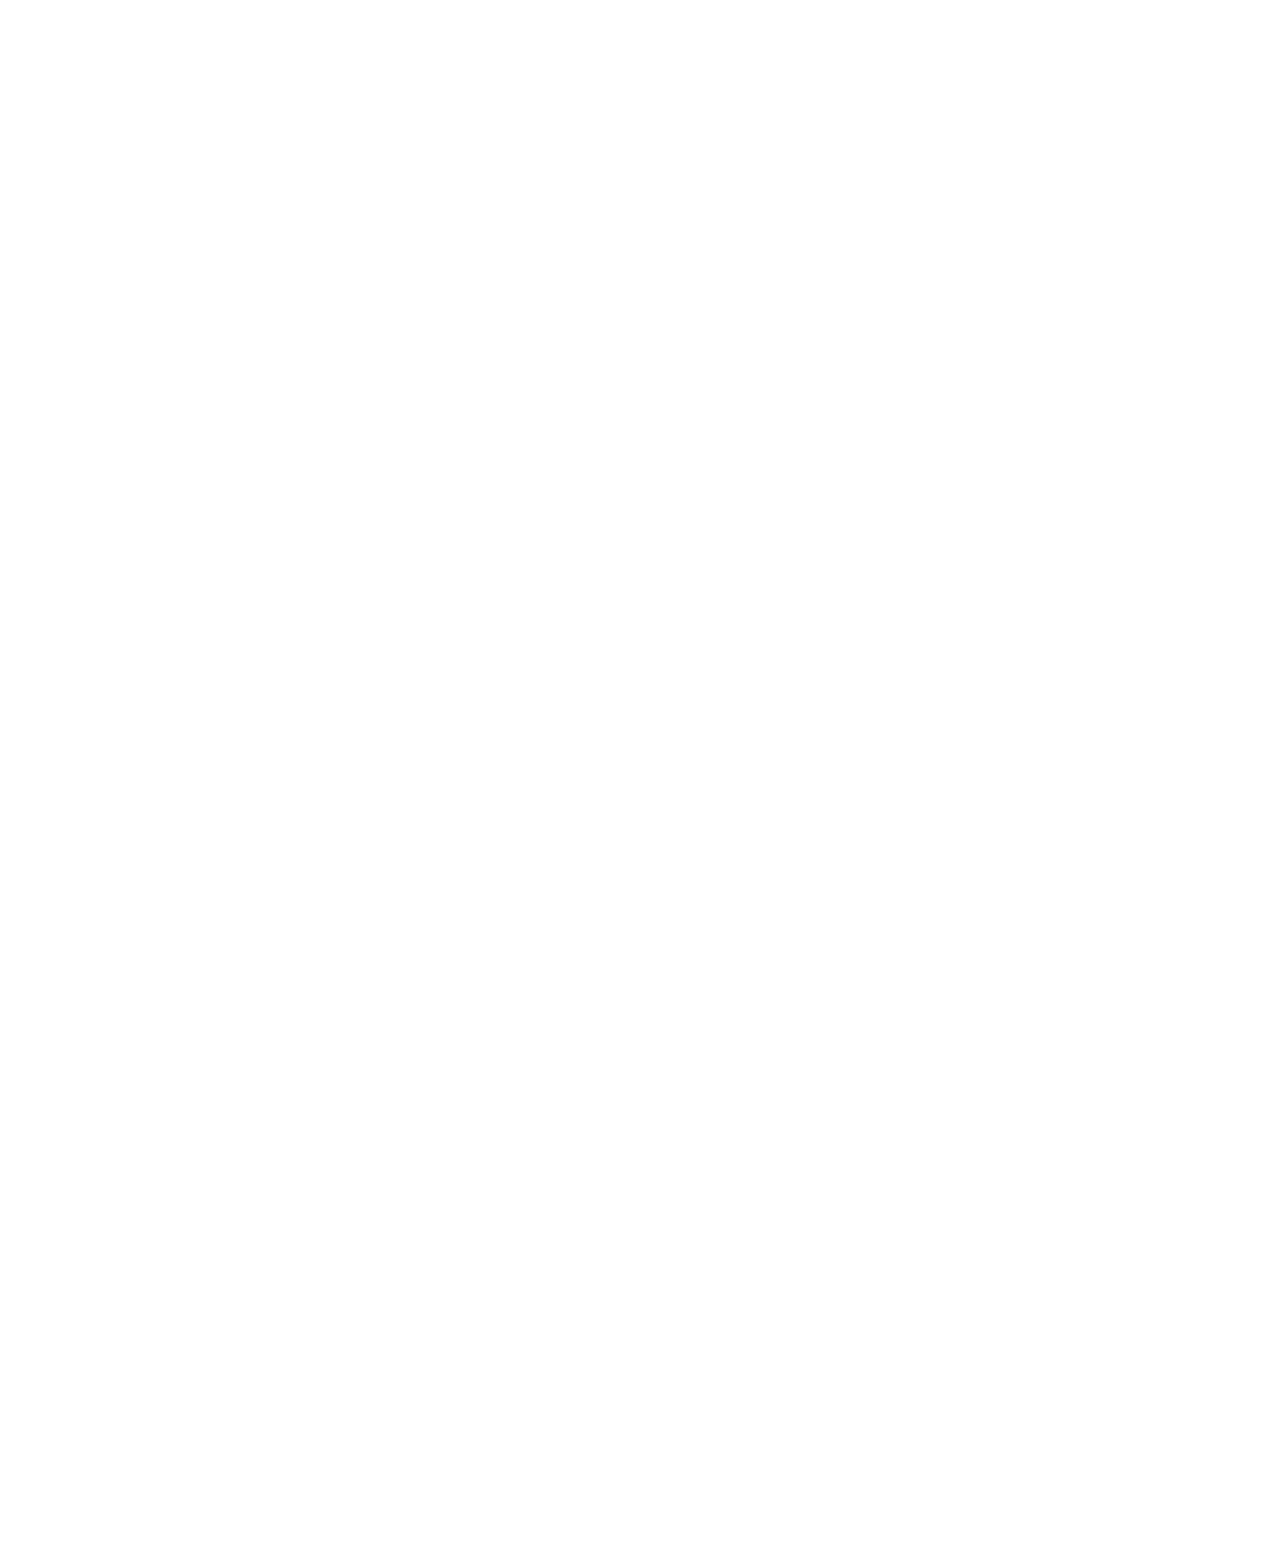 Dine Brands Global logo pour fonds sombres (PNG transparent)